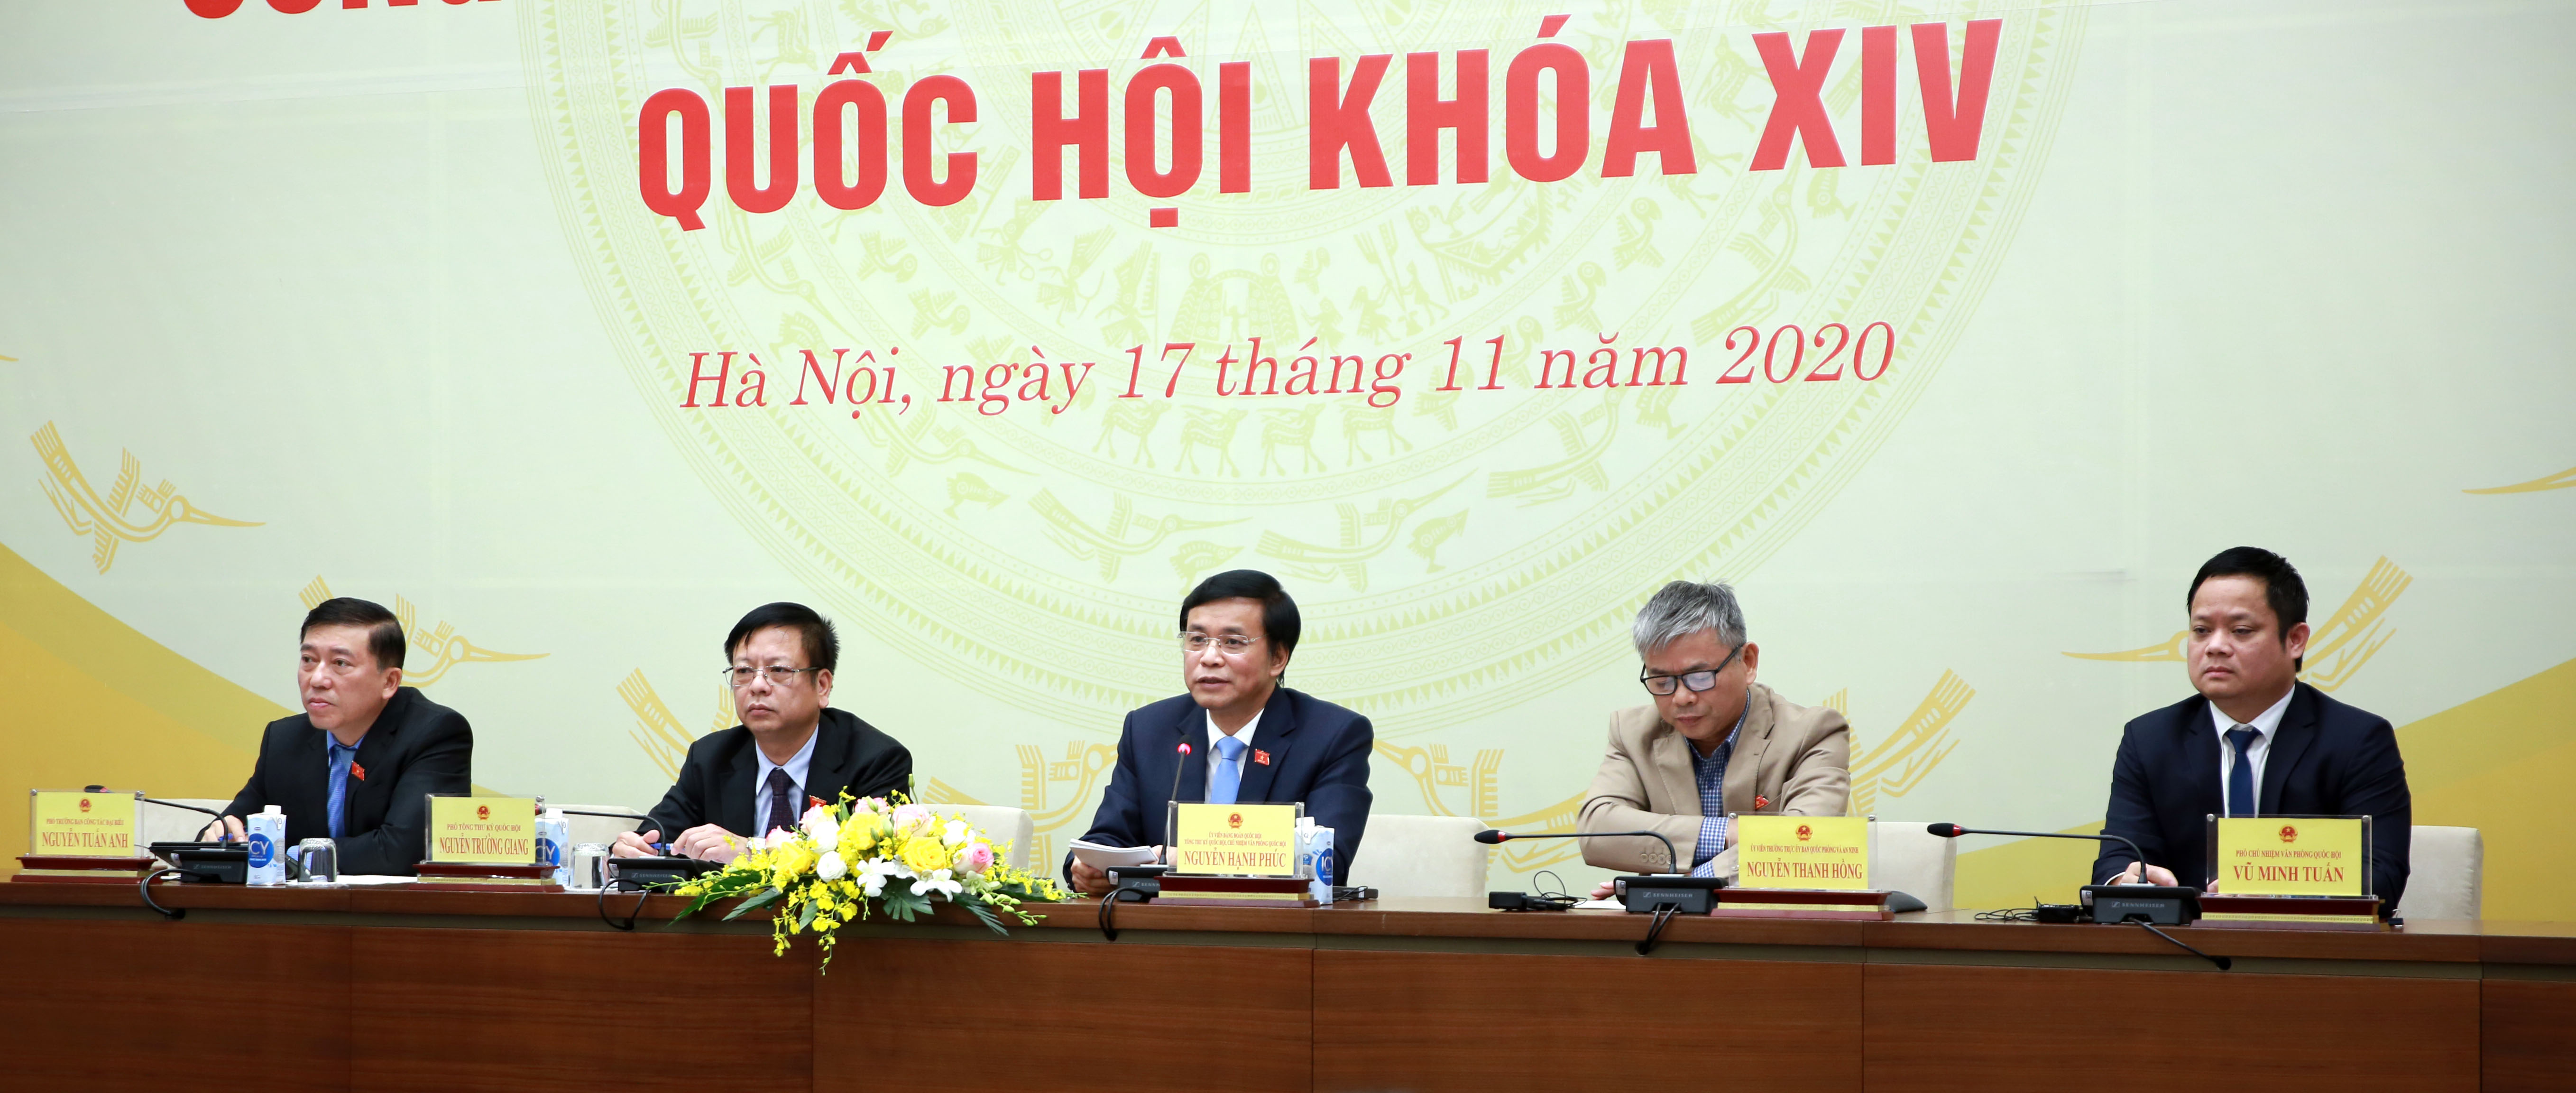 	Tổng thư ký Quốc hội, Chủ nhiệm Văn phòng Quốc hội Nguyễn Hạnh Phúc chủ trì cuộc họp báo